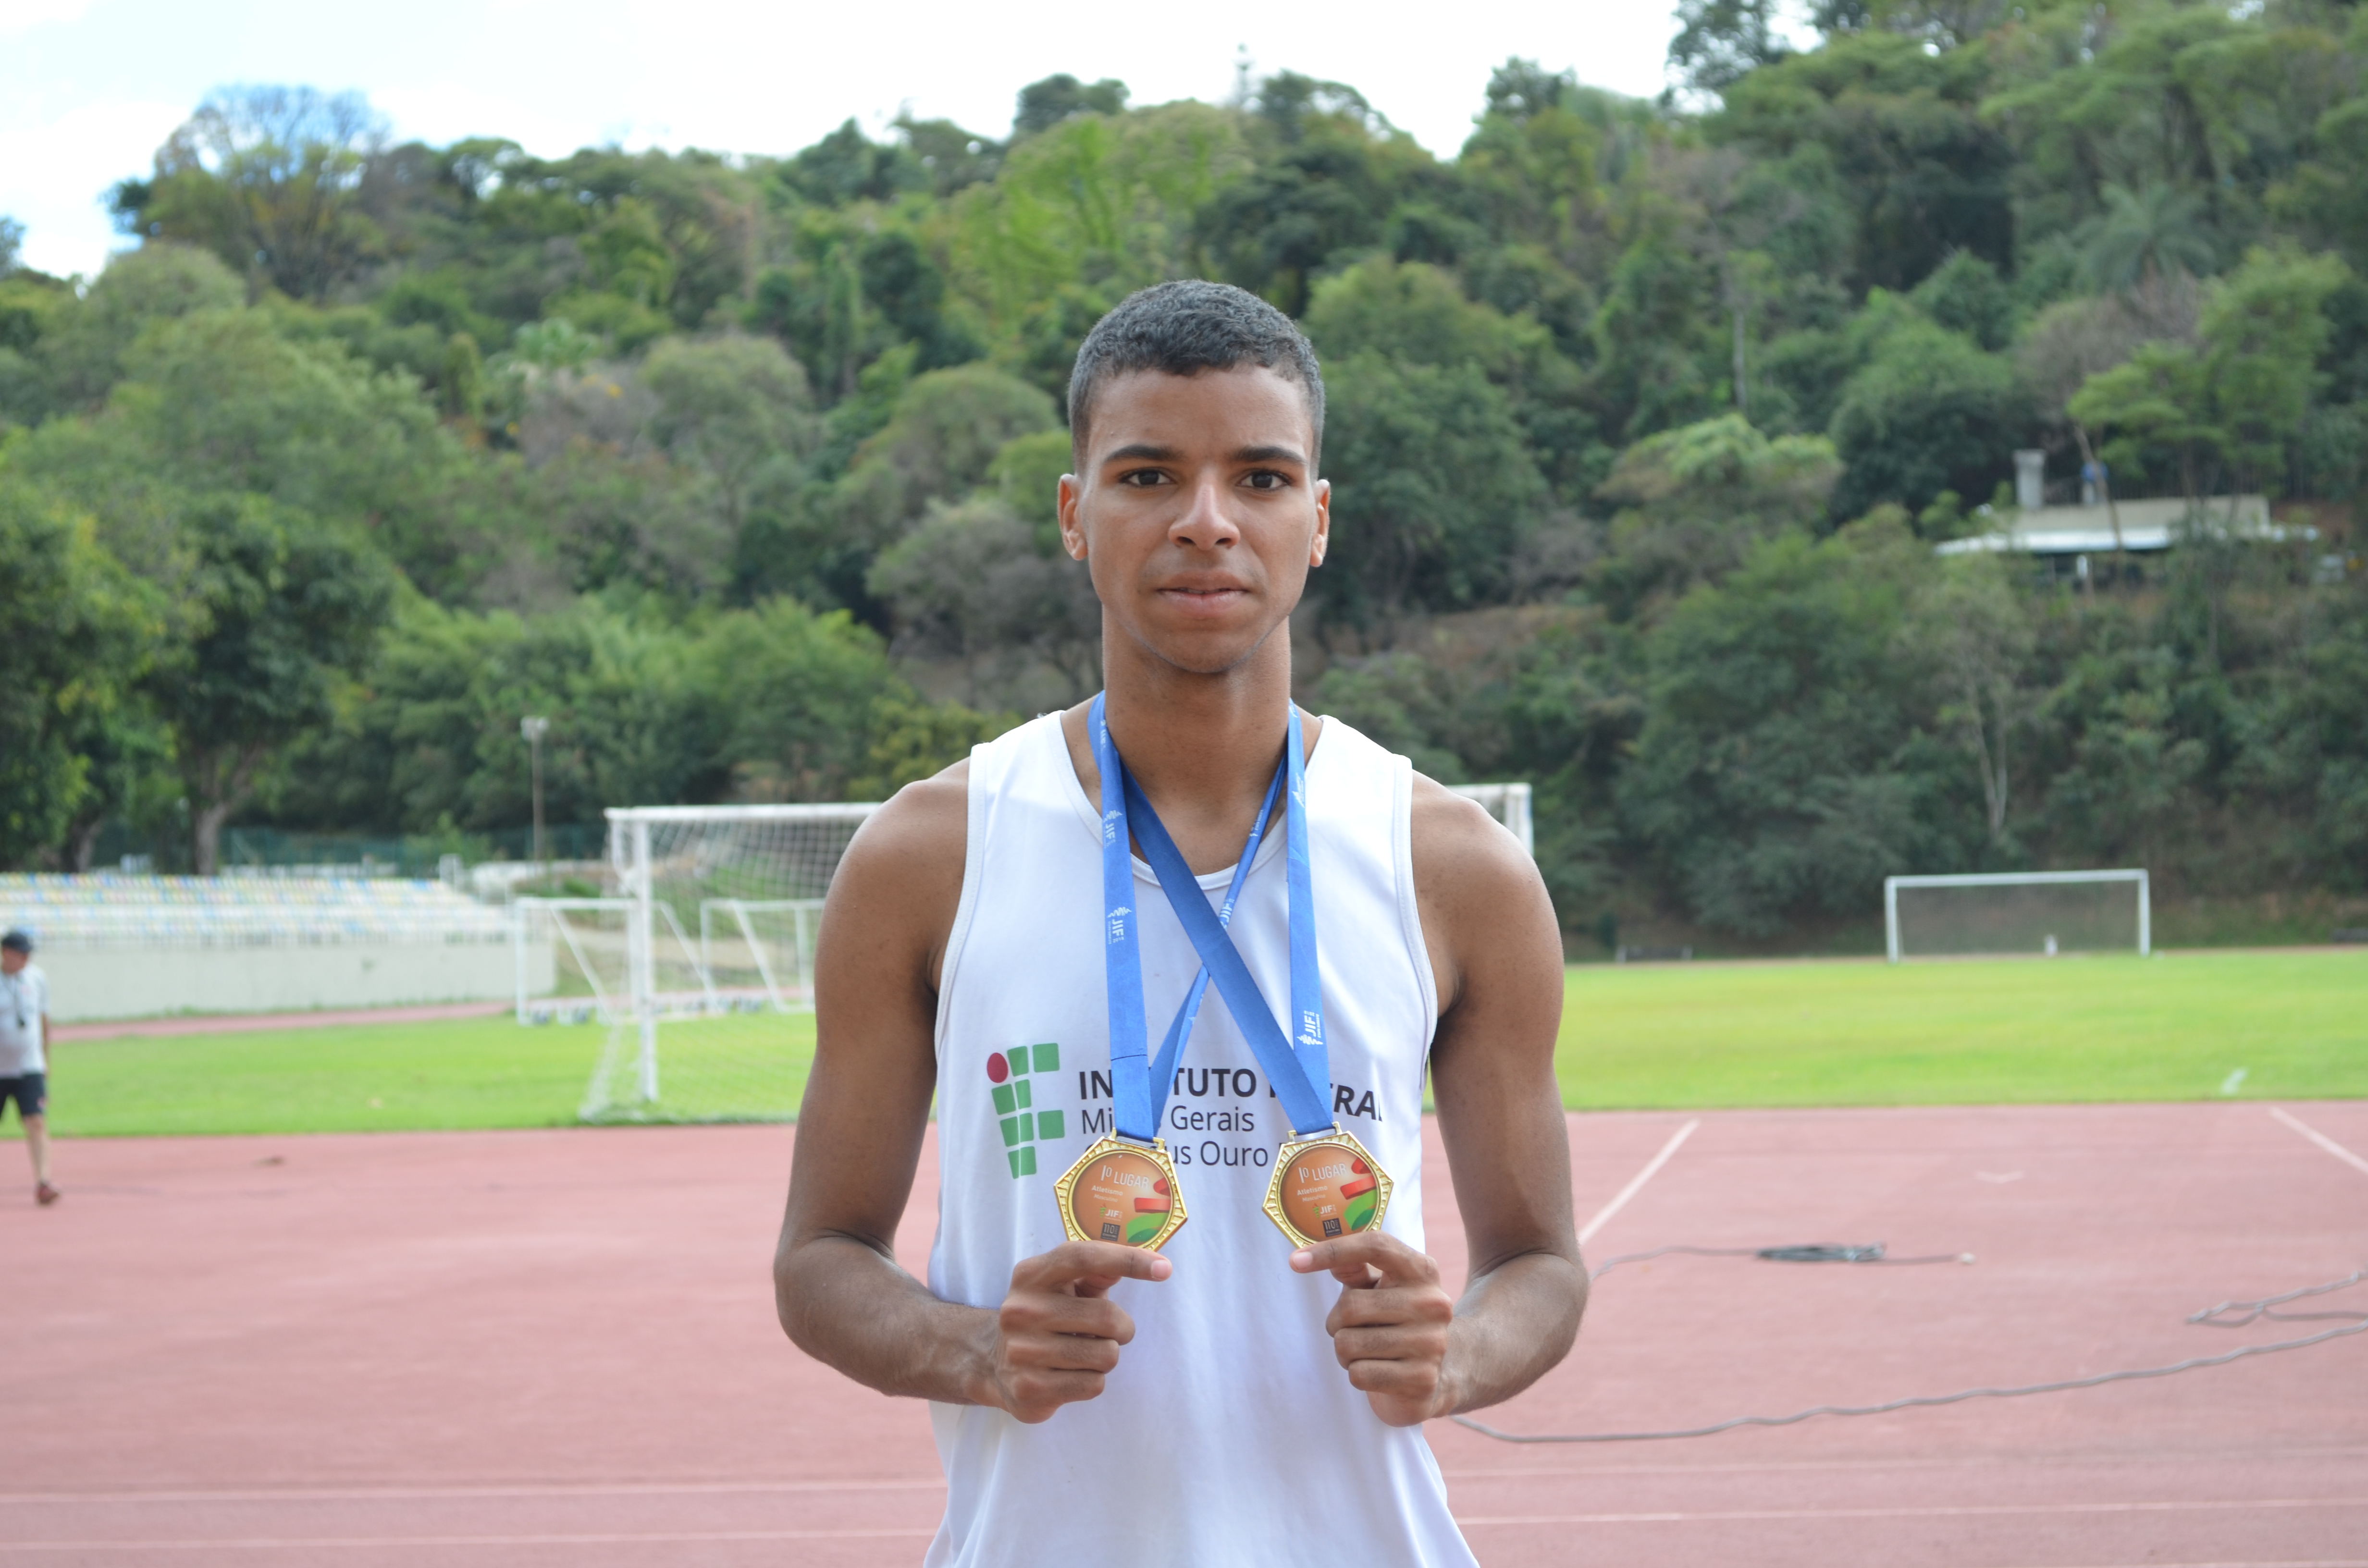 Vitor Gabriel Soares de Paula, aluno do curso Técnico em Mineração do Campus Ouro Preto - medalha de ouro nos 400m e 800m